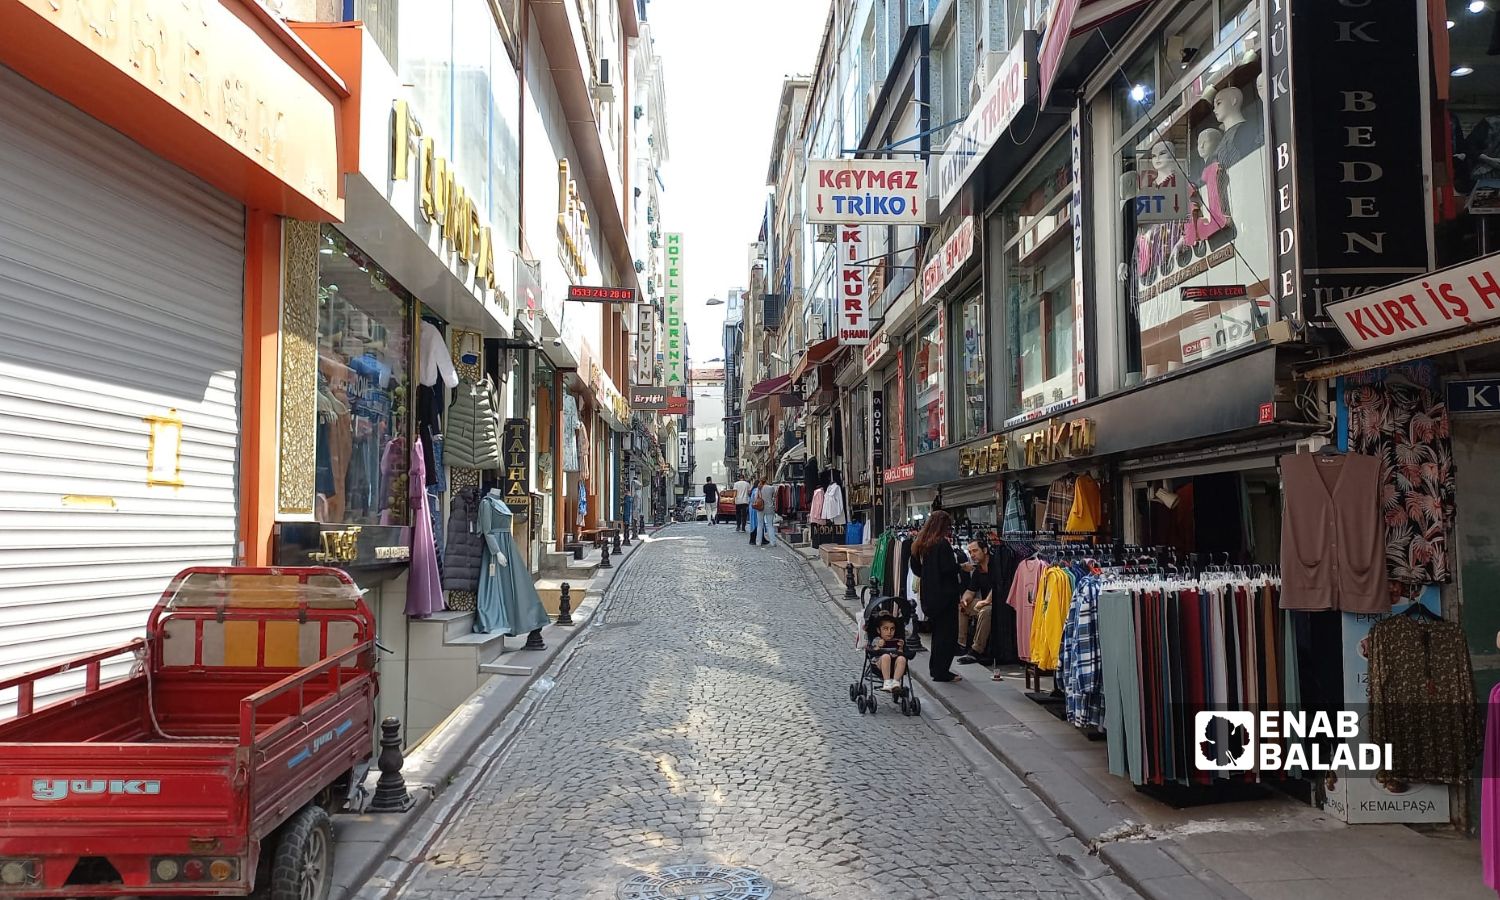 Mahmoud Pasha market, next to the Beyazit neighborhood in Istanbul - 30 August 2022 (Enab Baladi)